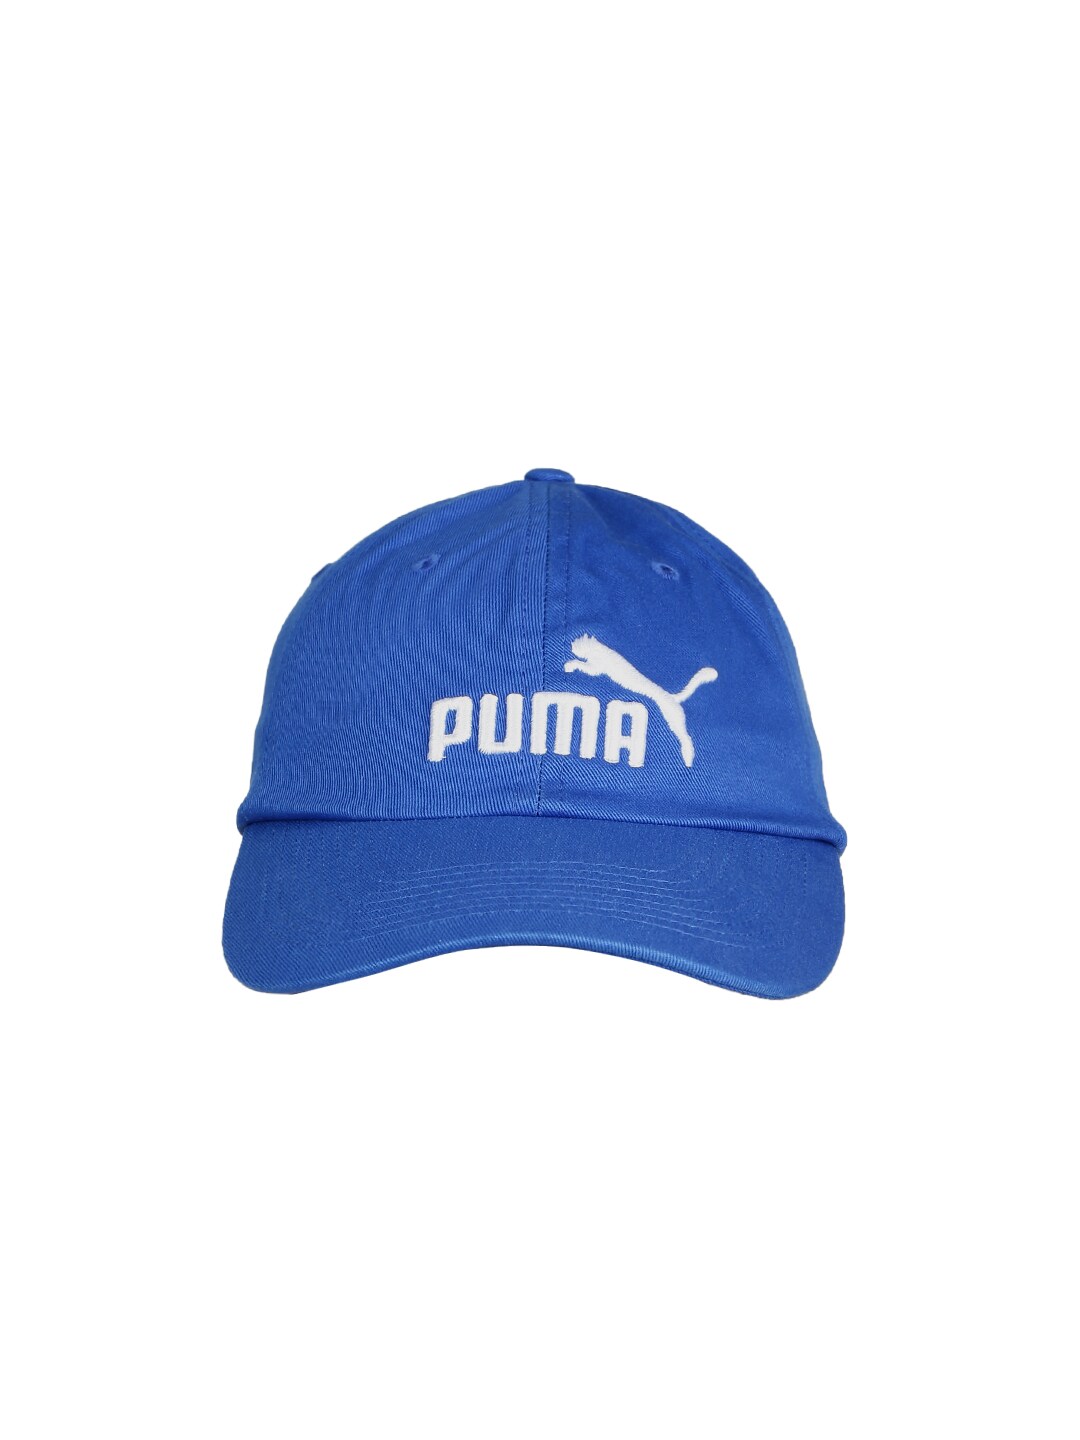 Puma Unisex Blue ESS Baseball Cap Price in India